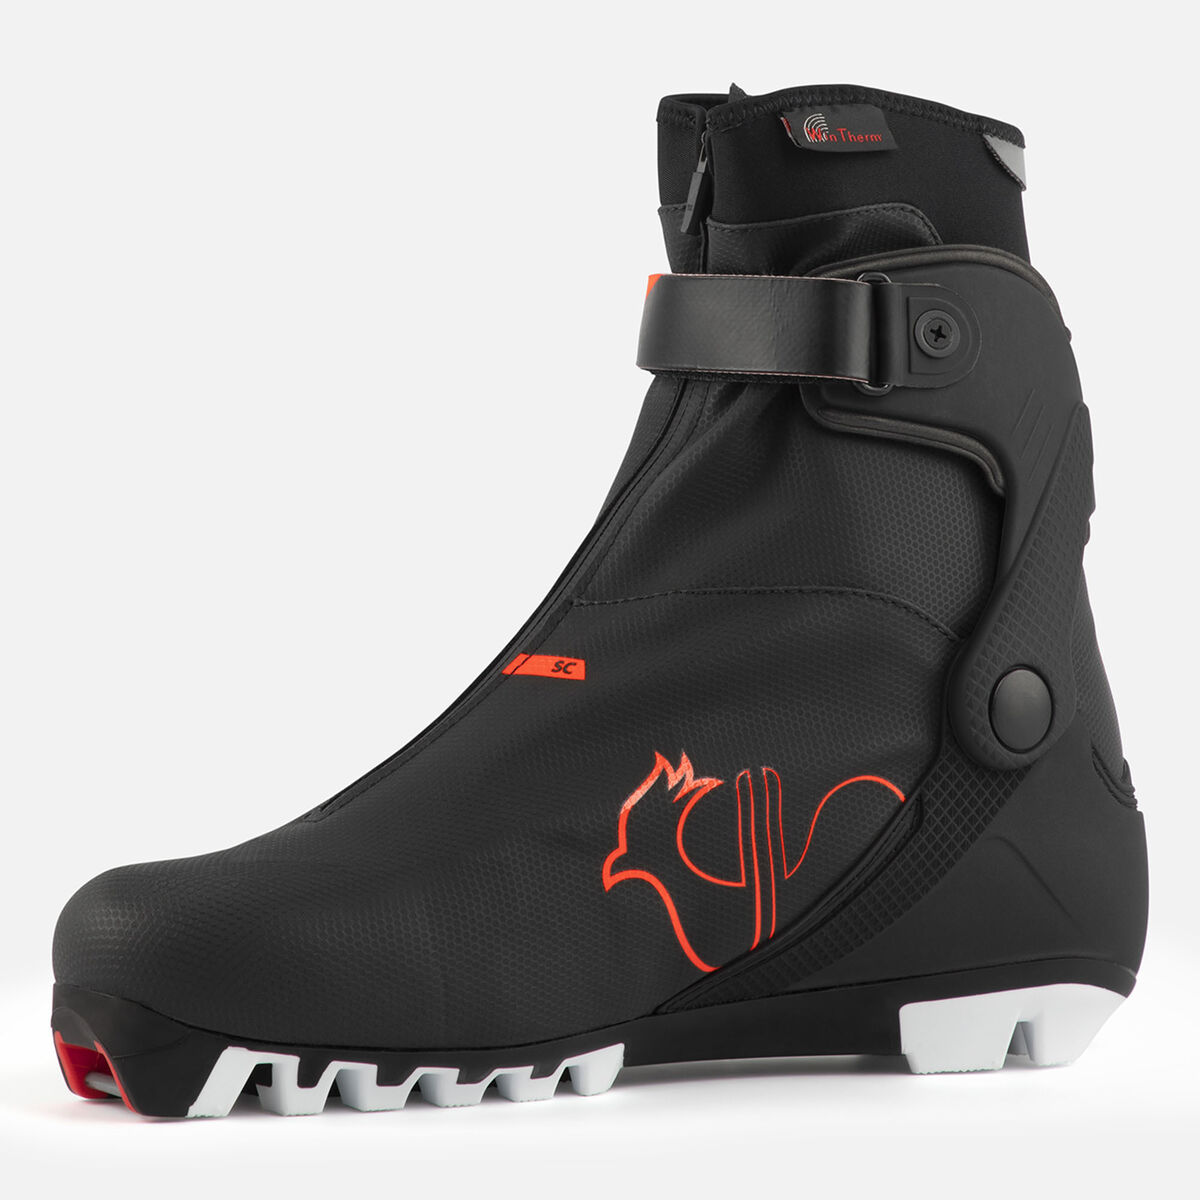 Chaussures de ski nordique Racing Skating et Classique Unisexe X-8